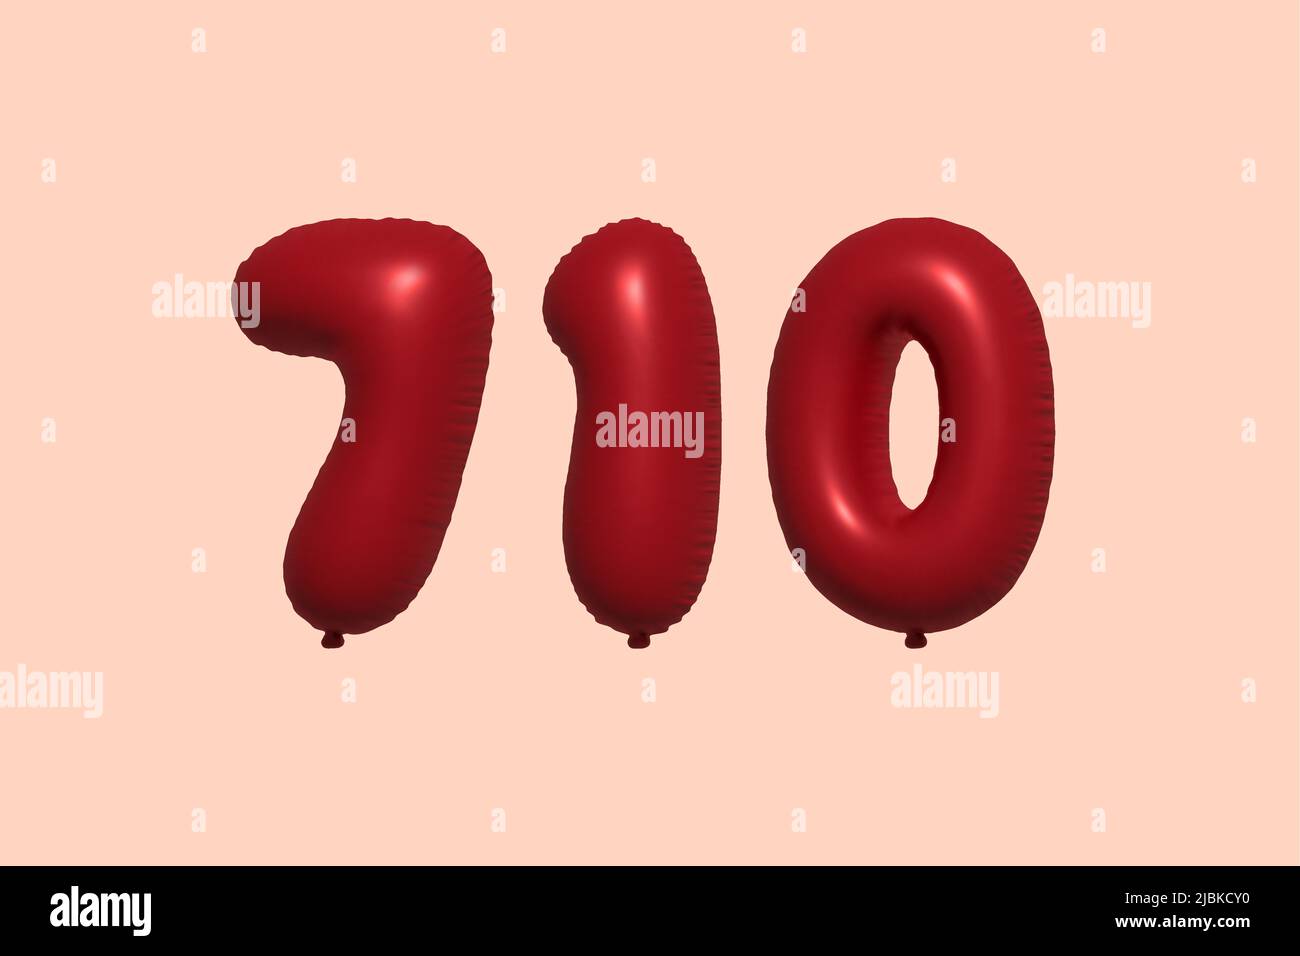 globo de 710 3d números hecho de aeroglobo metálico realista 3d renderizado. 3D globos rojos de helio para la venta decoración Fiesta Cumpleaños, Celebración de aniversario, Vacaciones de boda. Ilustración vectorial Ilustración del Vector